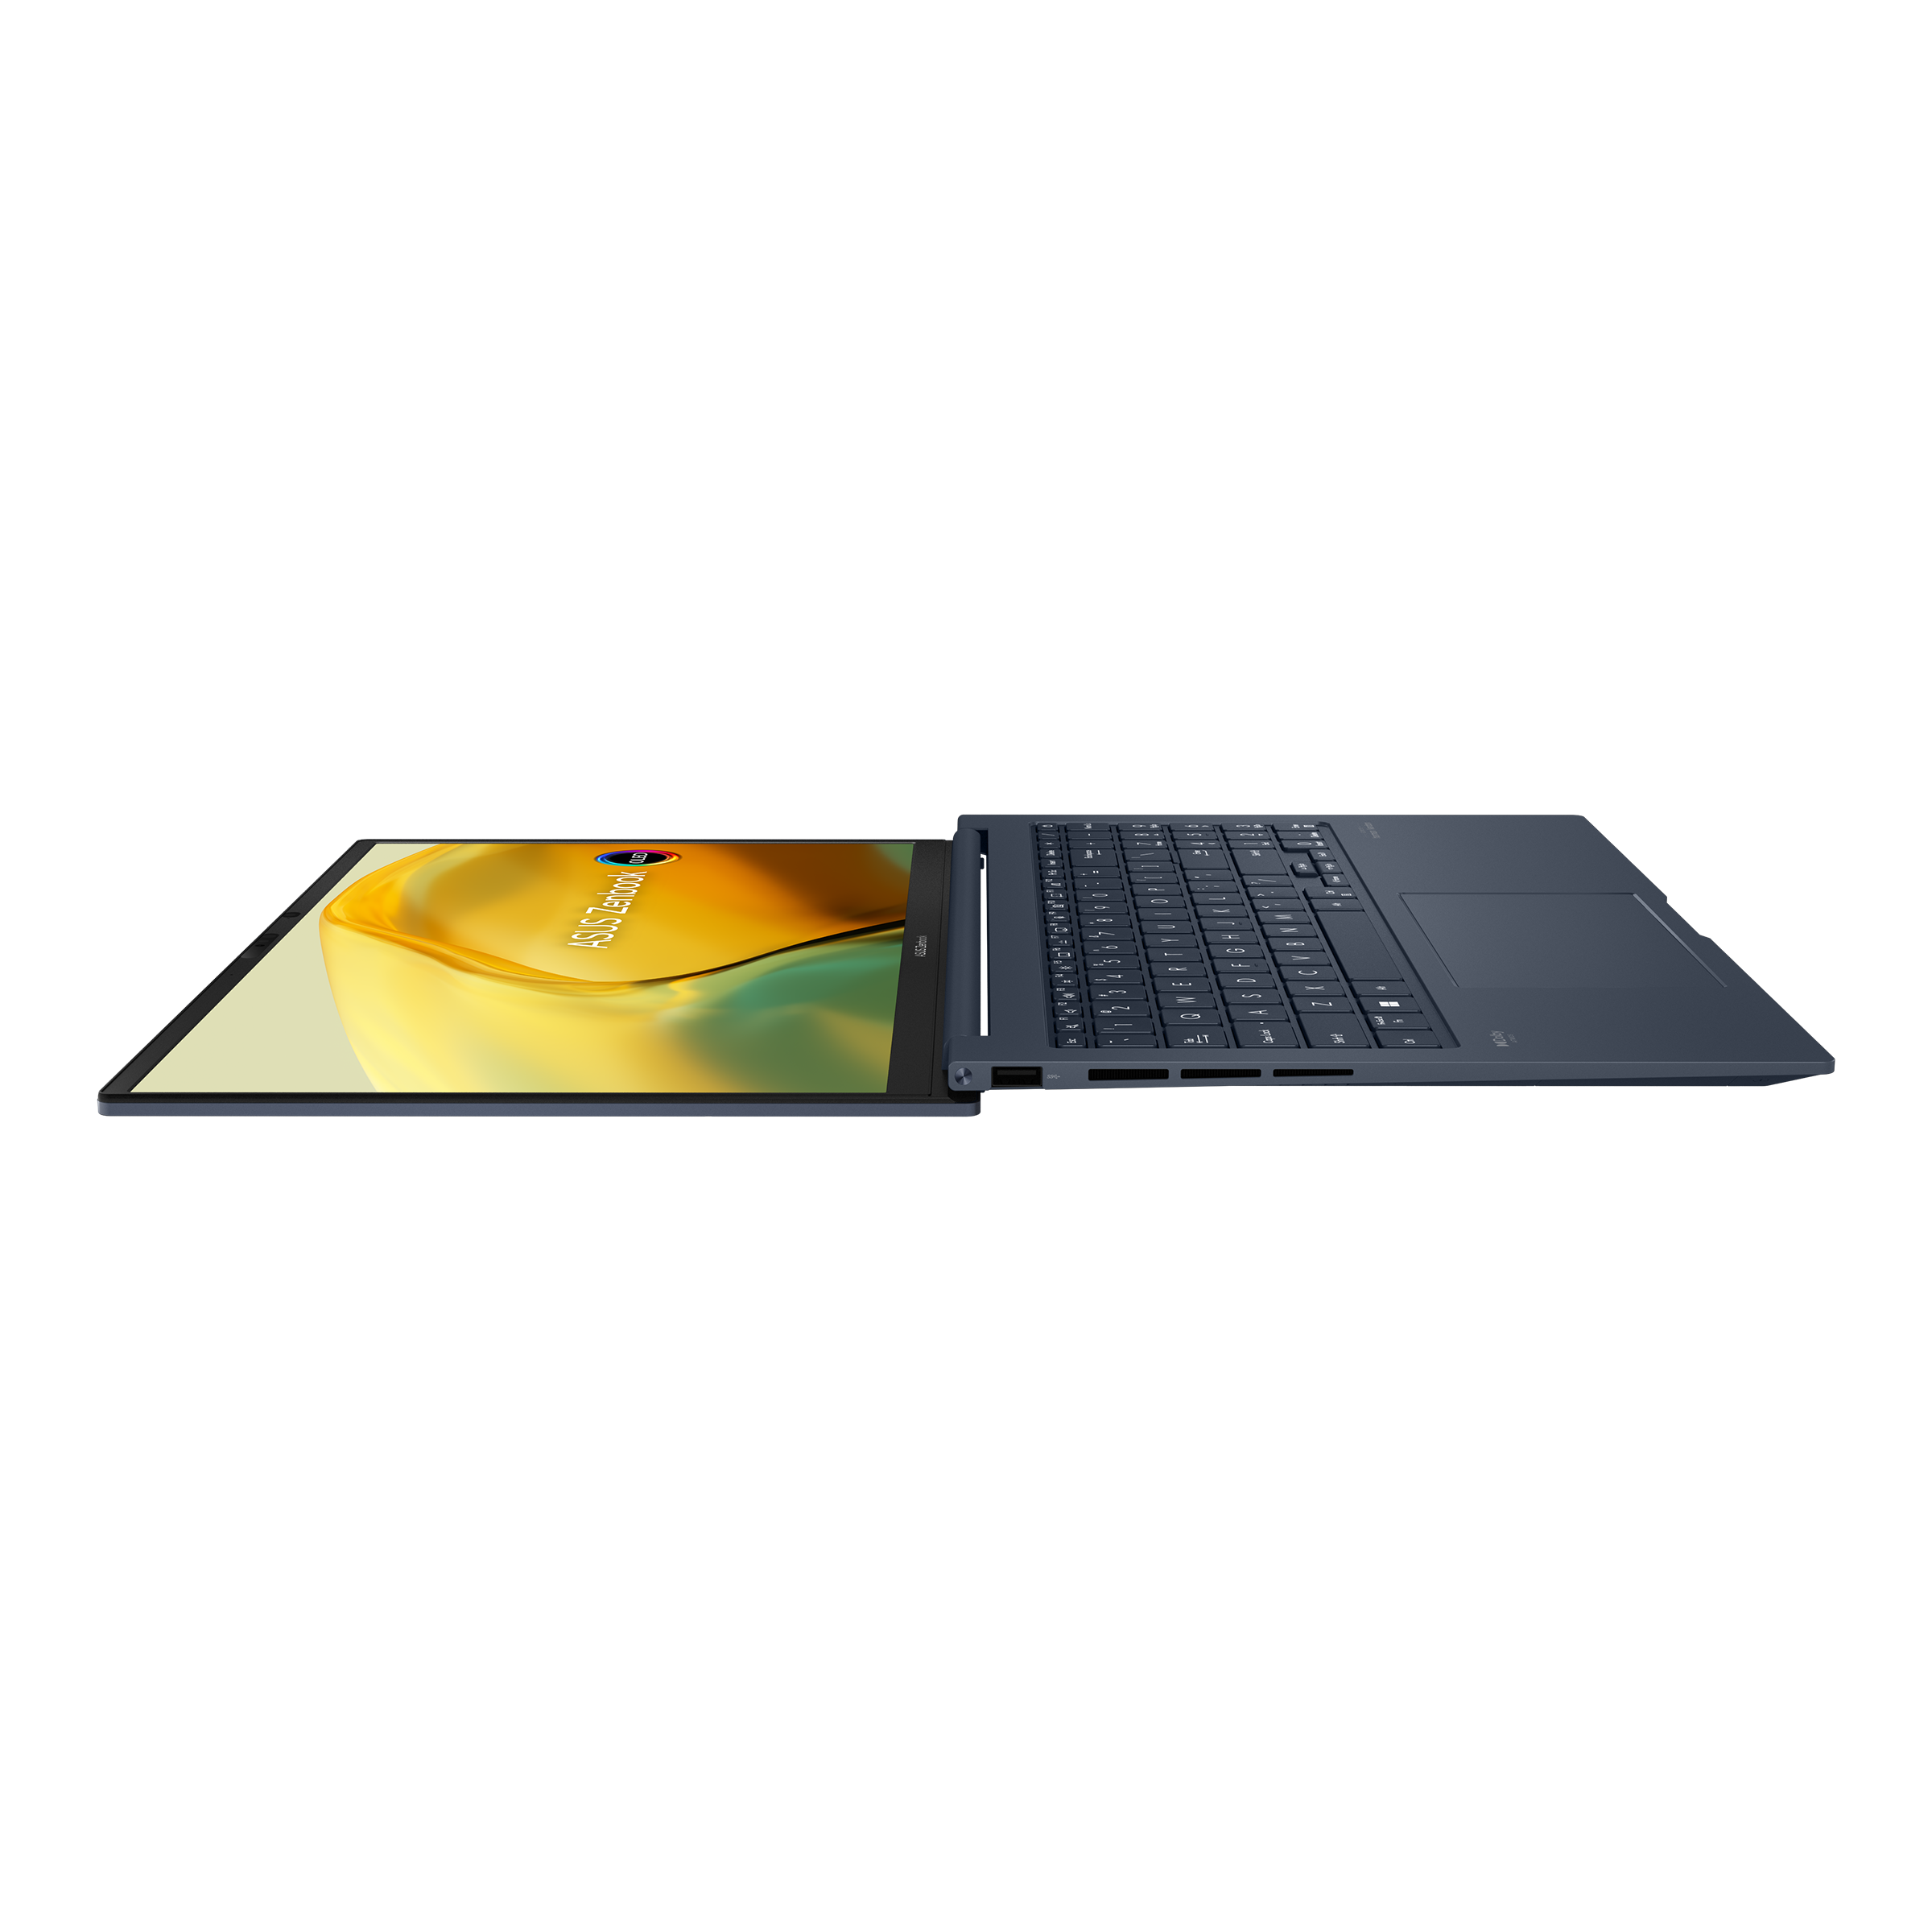 ASUS Zenbook 15 OLED (UM3504) Review - AMD Ryzen 7 - Budget LUXURY